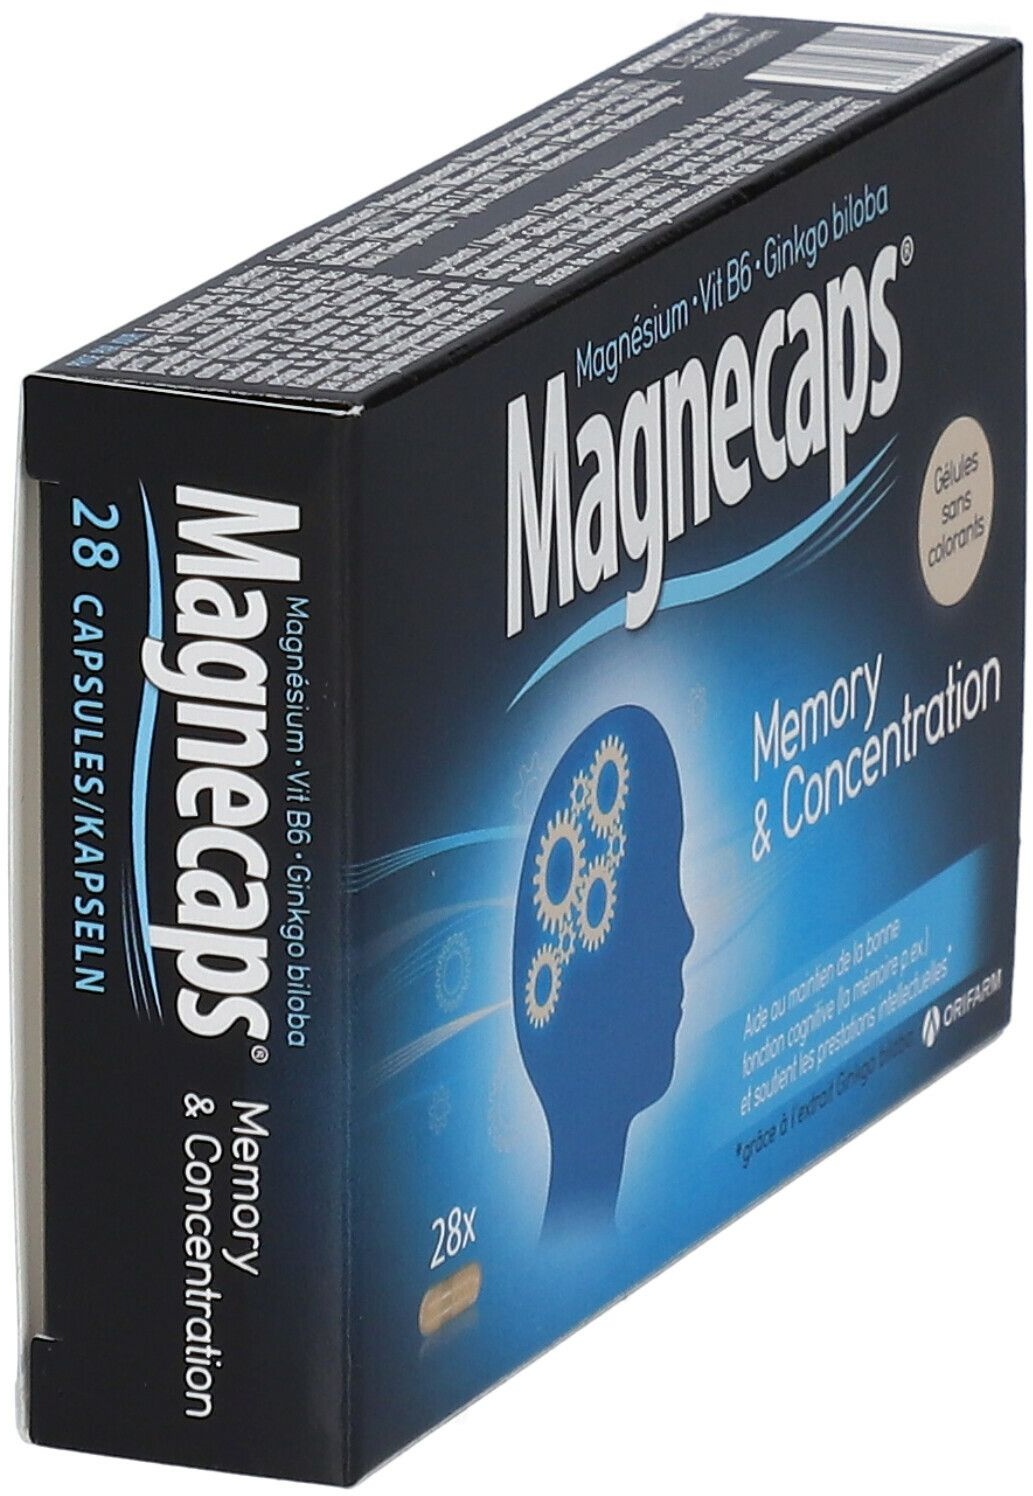 Magnecaps® Mémoire & Concentration 28 pc(s) capsule(s)